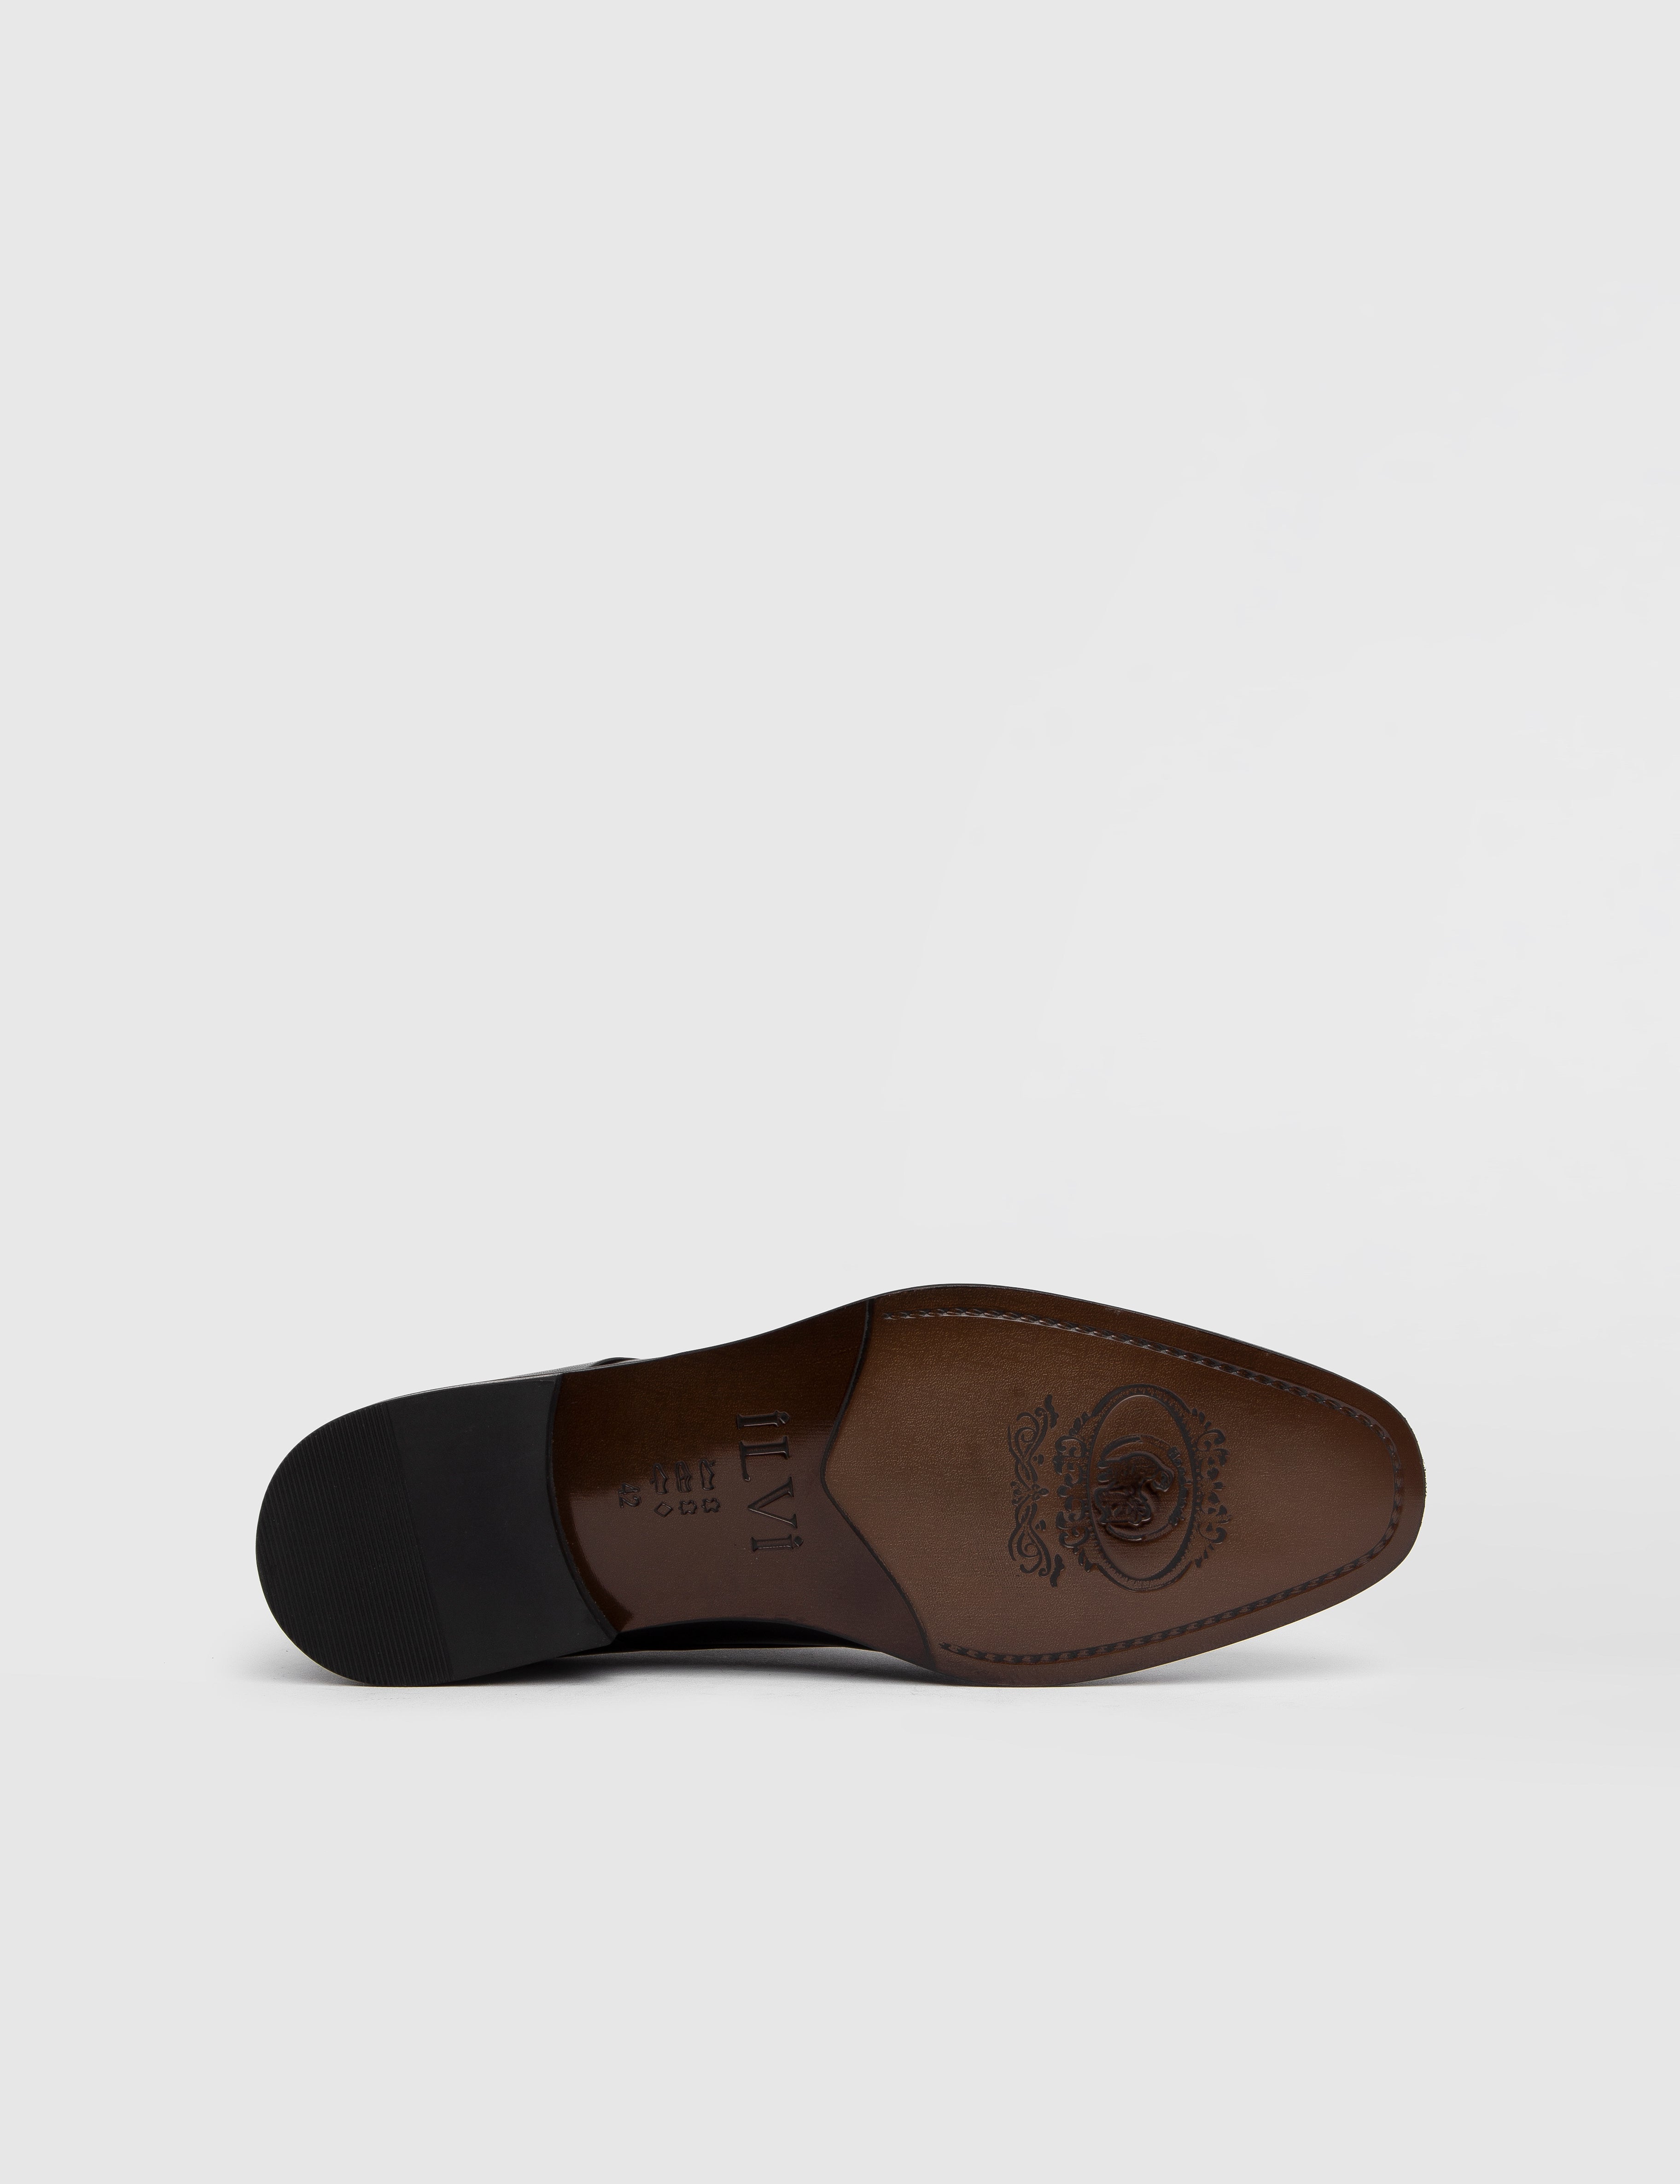 Vitis Derby-Schuh für Herren aus antikem schwarzem Leder